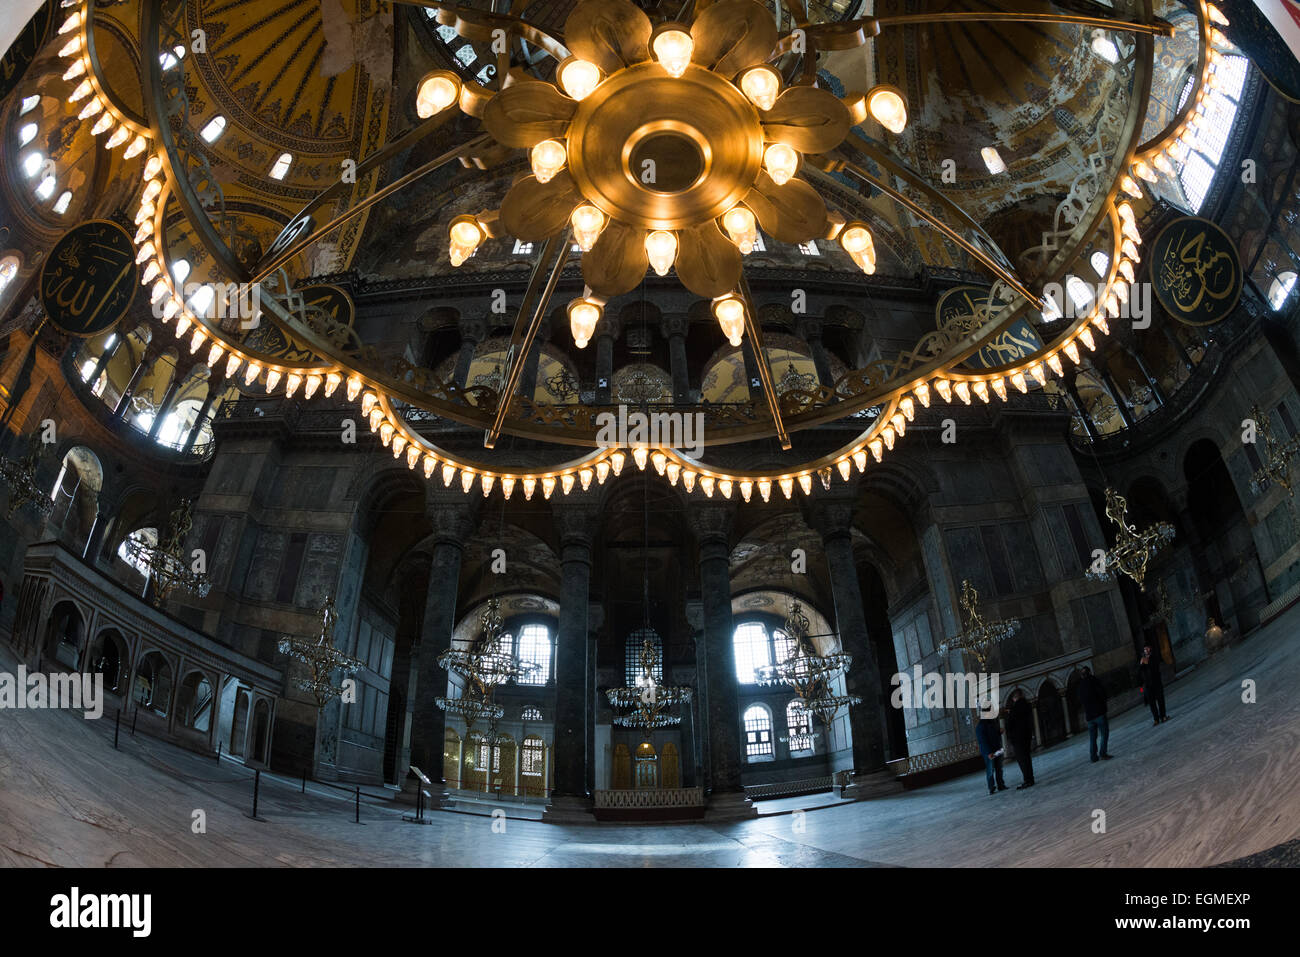 ISTANBUL, Turquie - l'un des grands lustres suspendus à Sainte-Sophie à Istanbul. Construit en 537, il a servi de cathédrale orthodoxe orientale, de cathédrale catholique romaine, de mosquée et maintenant de musée. Également connu sous le nom d'Ayasofya ou d'Aya Sofia, c'est l'un des principaux monuments d'Istanbul. En juillet 2020, le président turc Recep Tayyip Erdogan décrète que Sainte-Sophie serait reconvertie en mosquée. Banque D'Images